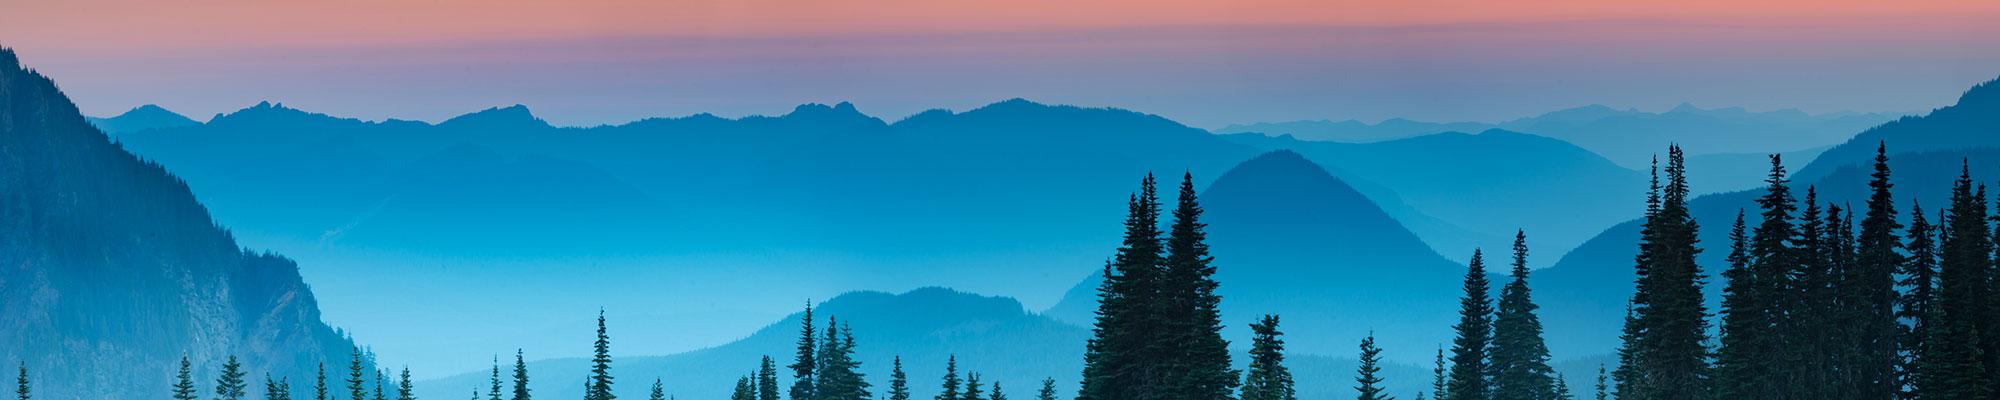 Cascade Mountains after sunset